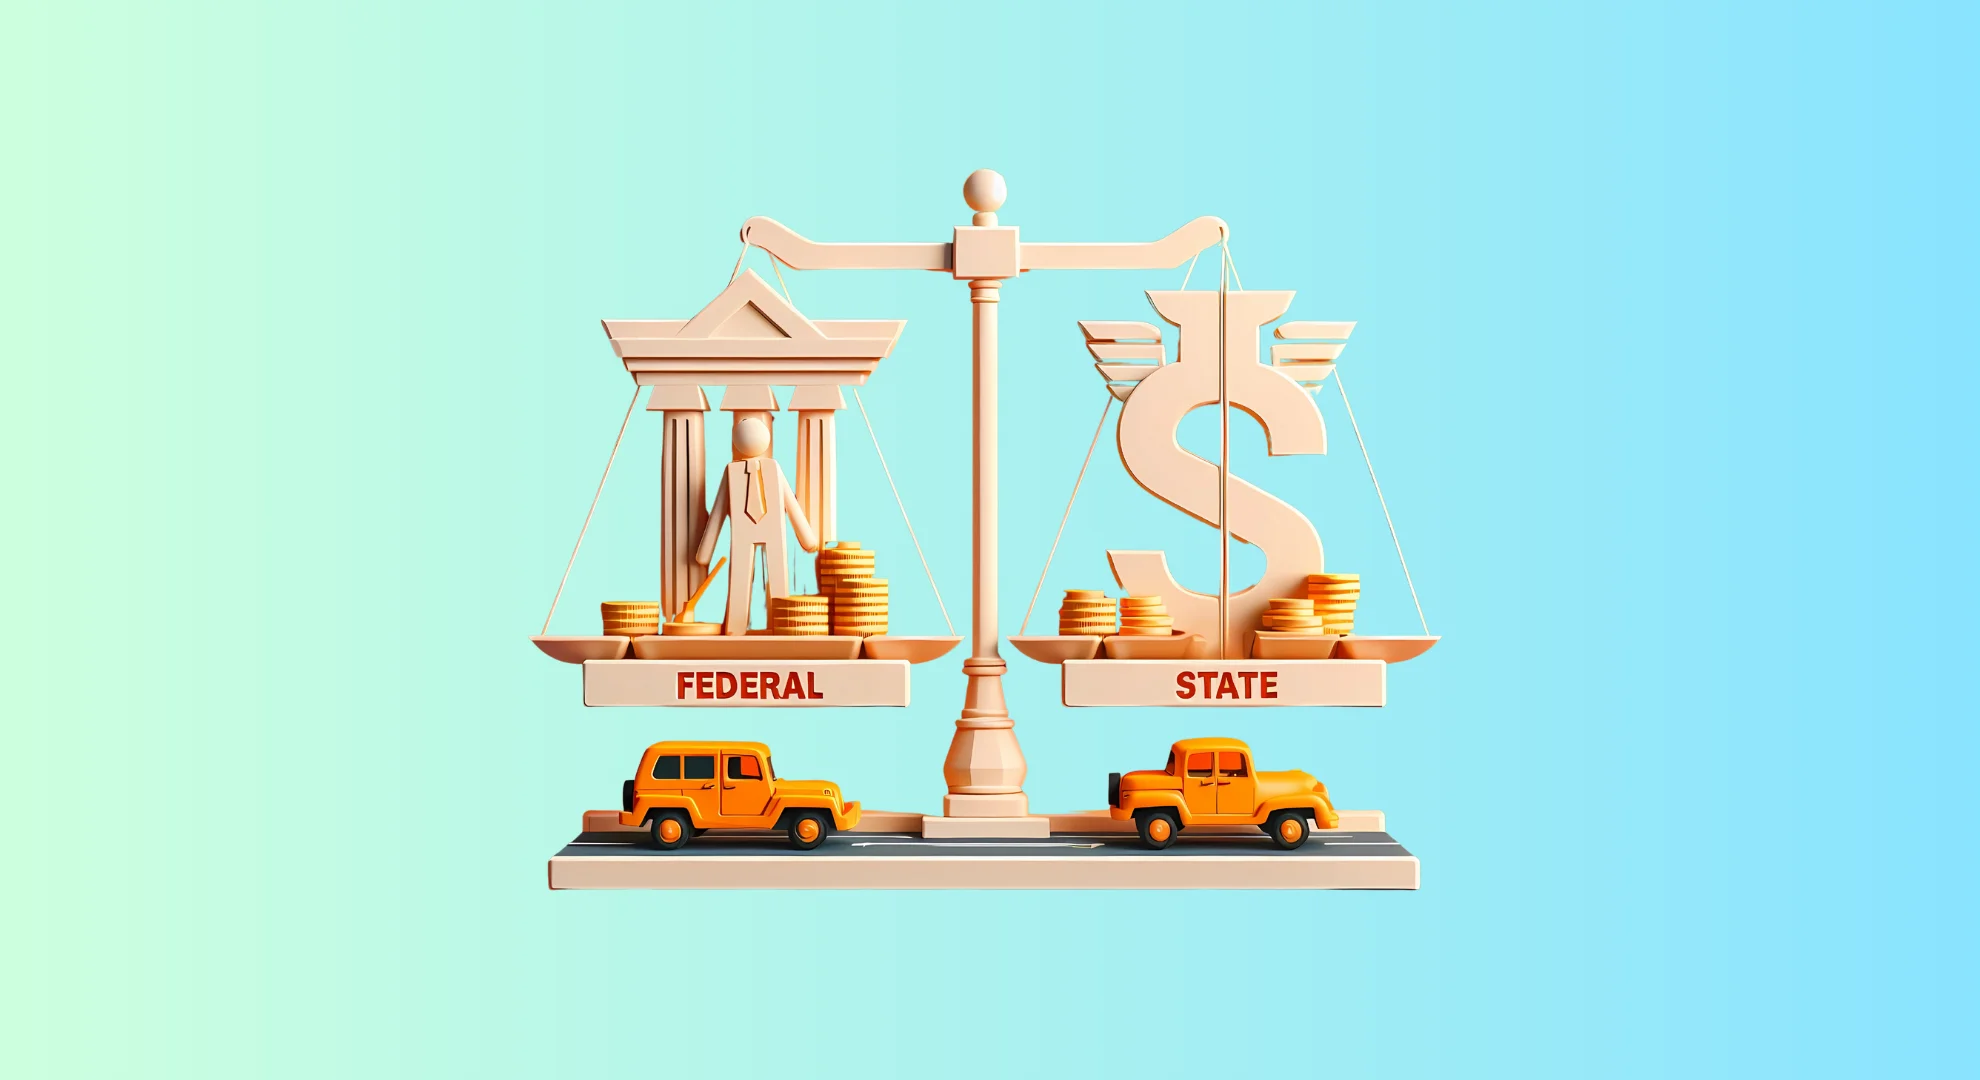 Federal Tax vs State Tax